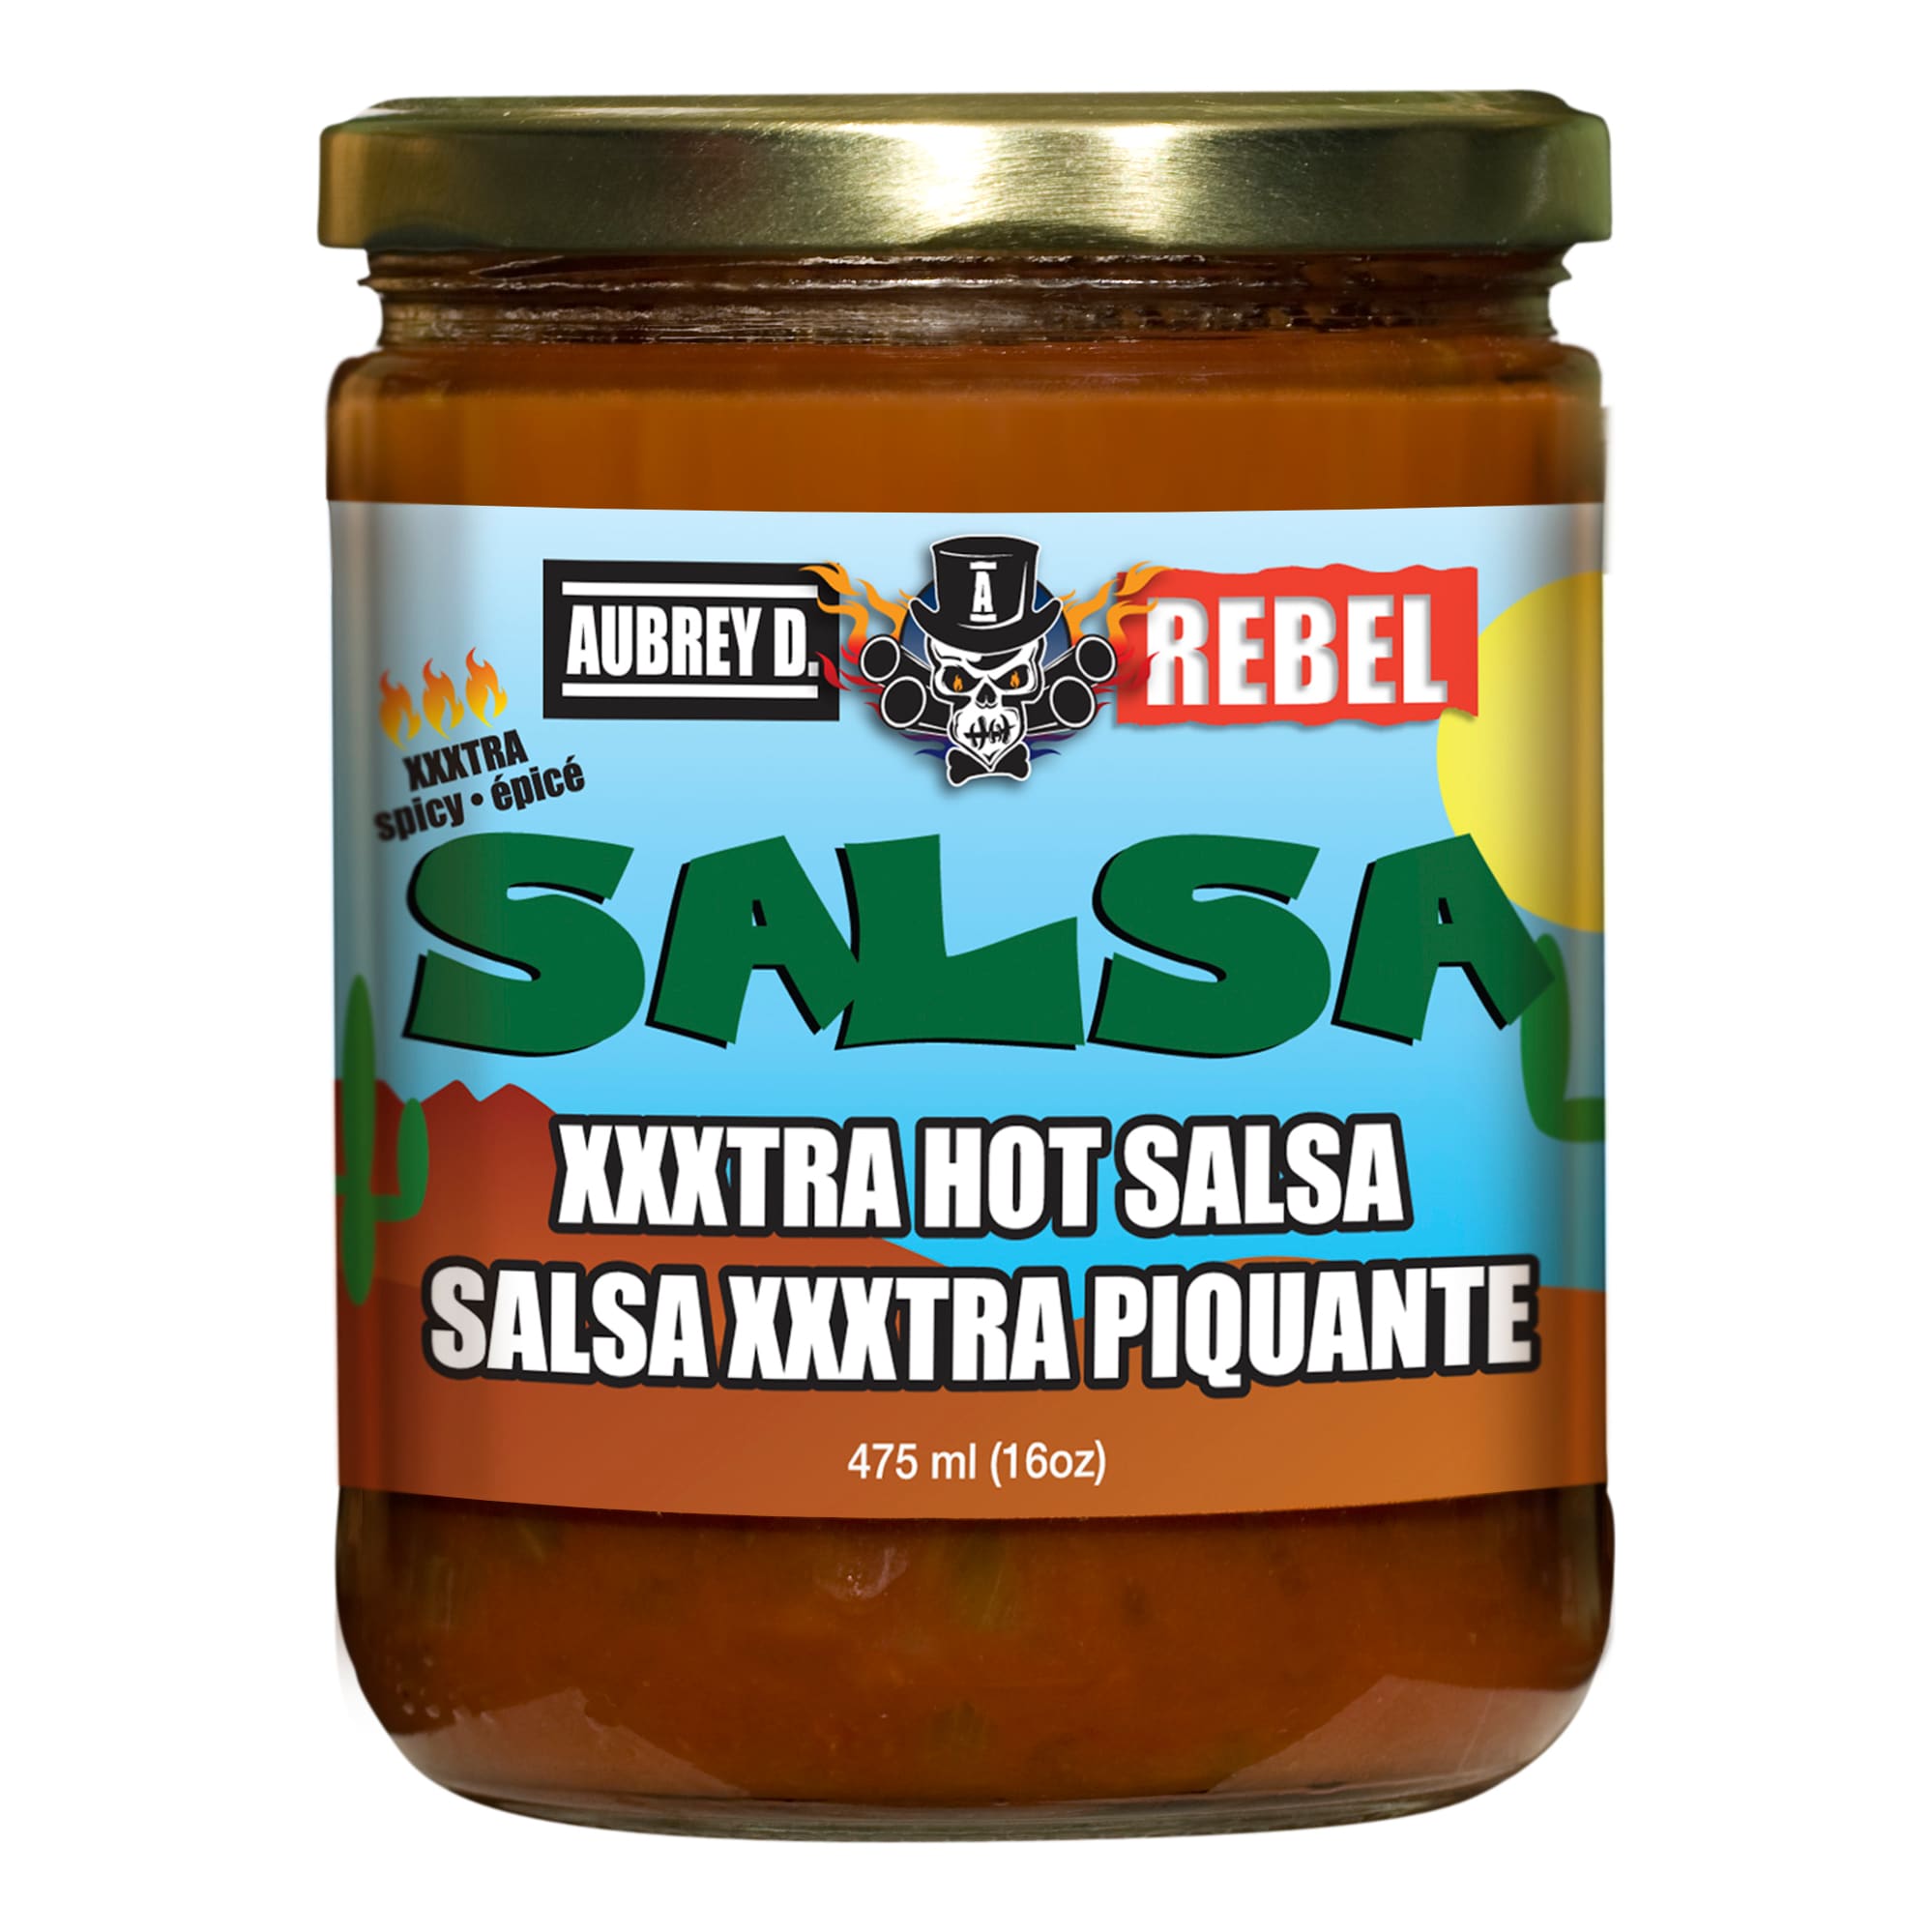 Aubrey D. Rebel XXX Hot Salsa